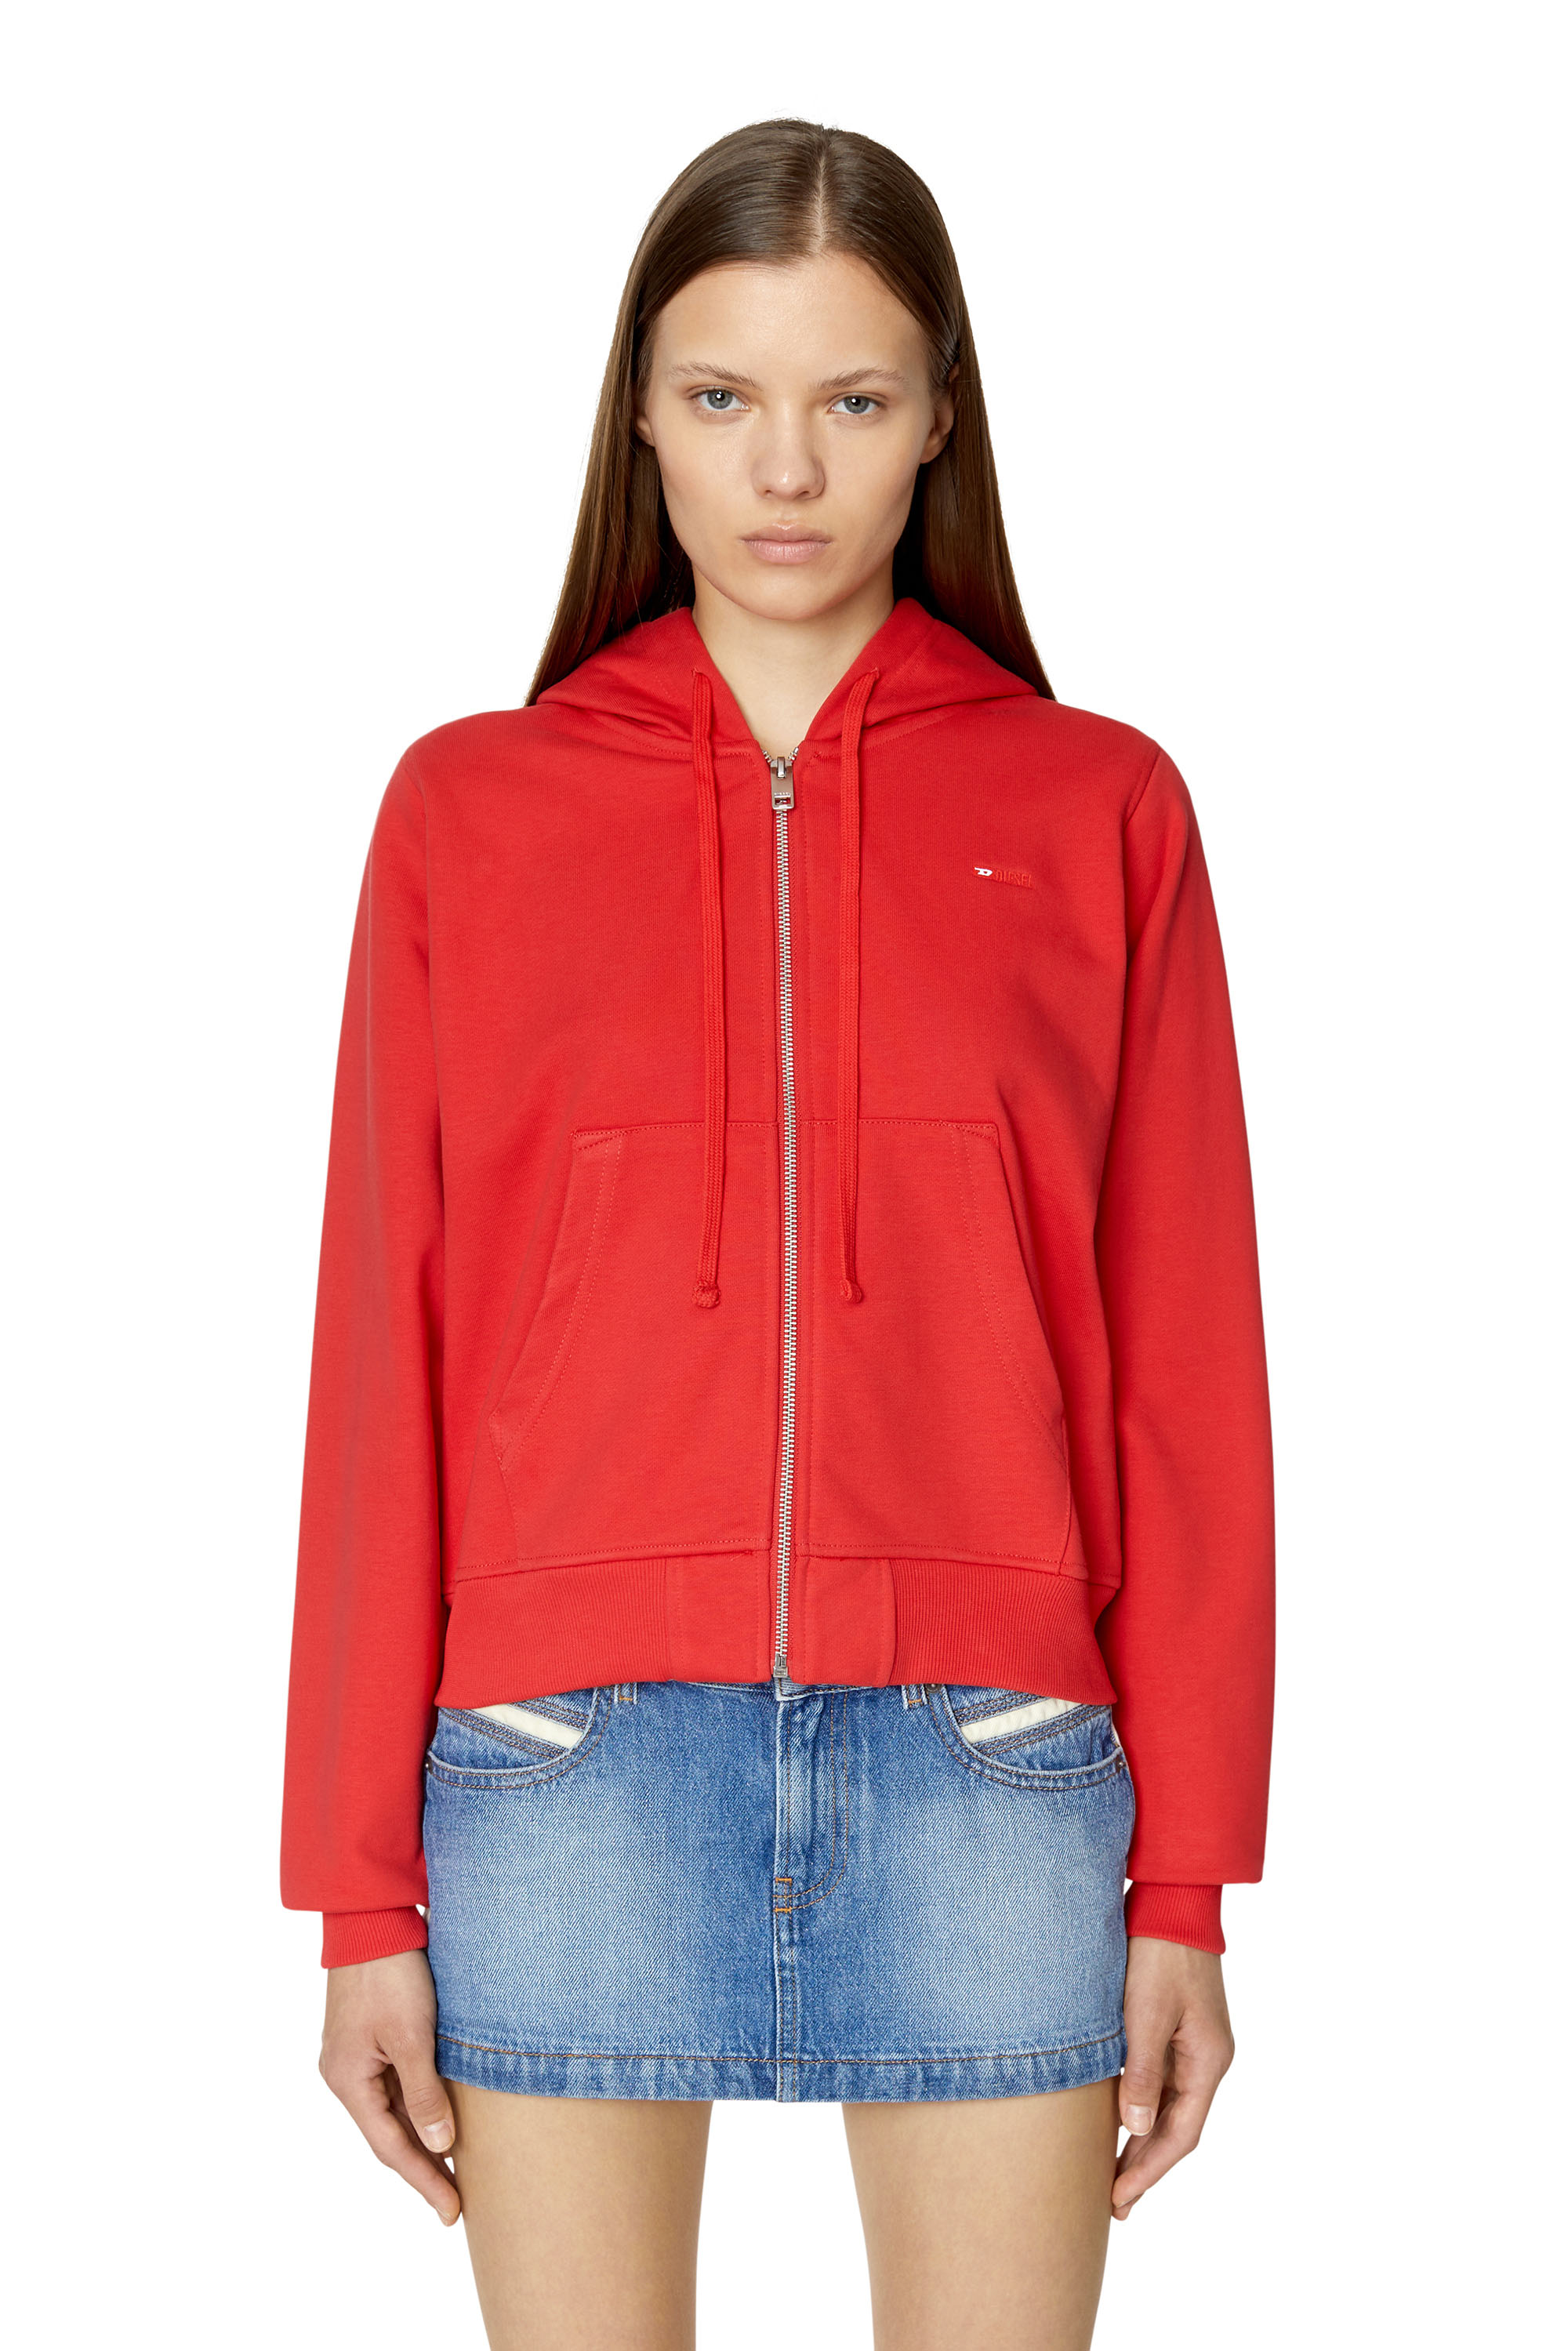 Diesel - Sweat-shirt à capuche avec micro logo brodé - Pull Cotton - Femme - Rouge